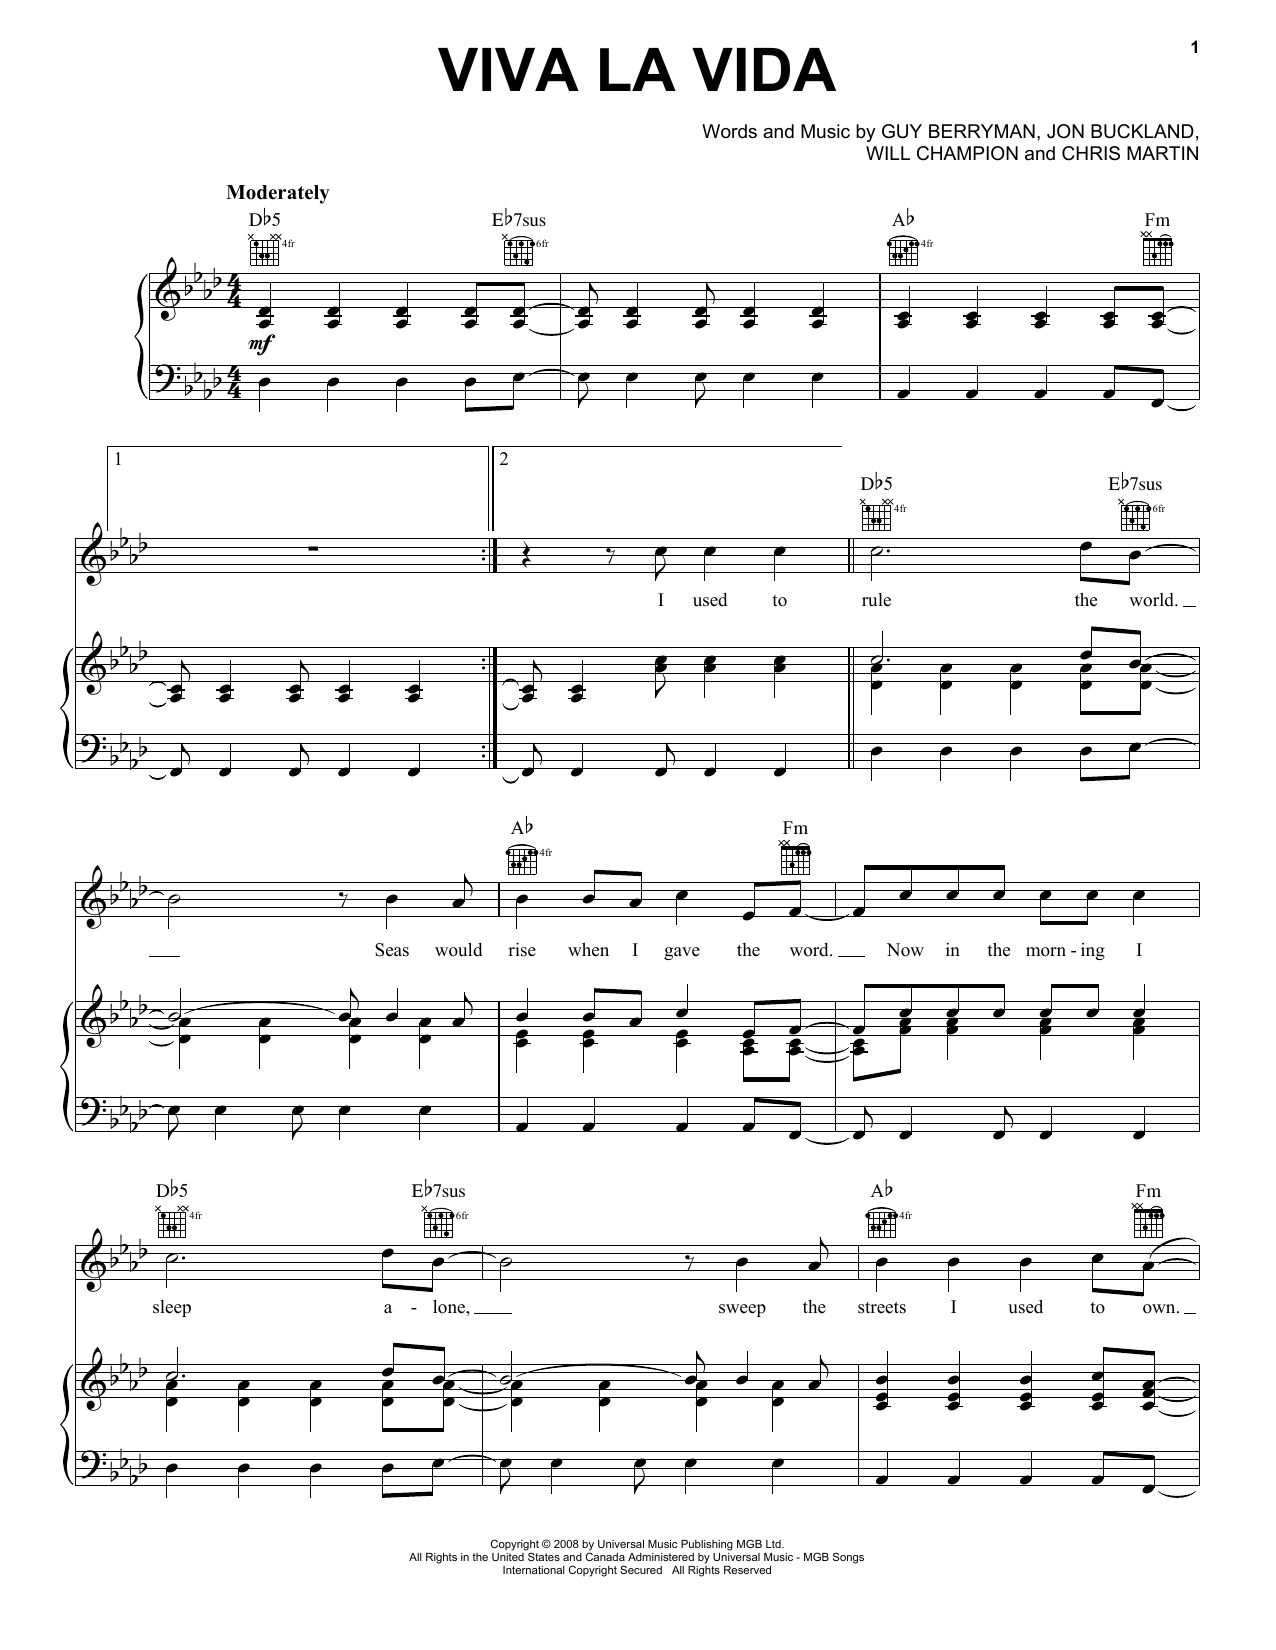 Coldplay Viva La Vida Sheet Music Notes Chords Download Rock Notes Piano Vocal Guitar Right Hand Melody Pdf Print